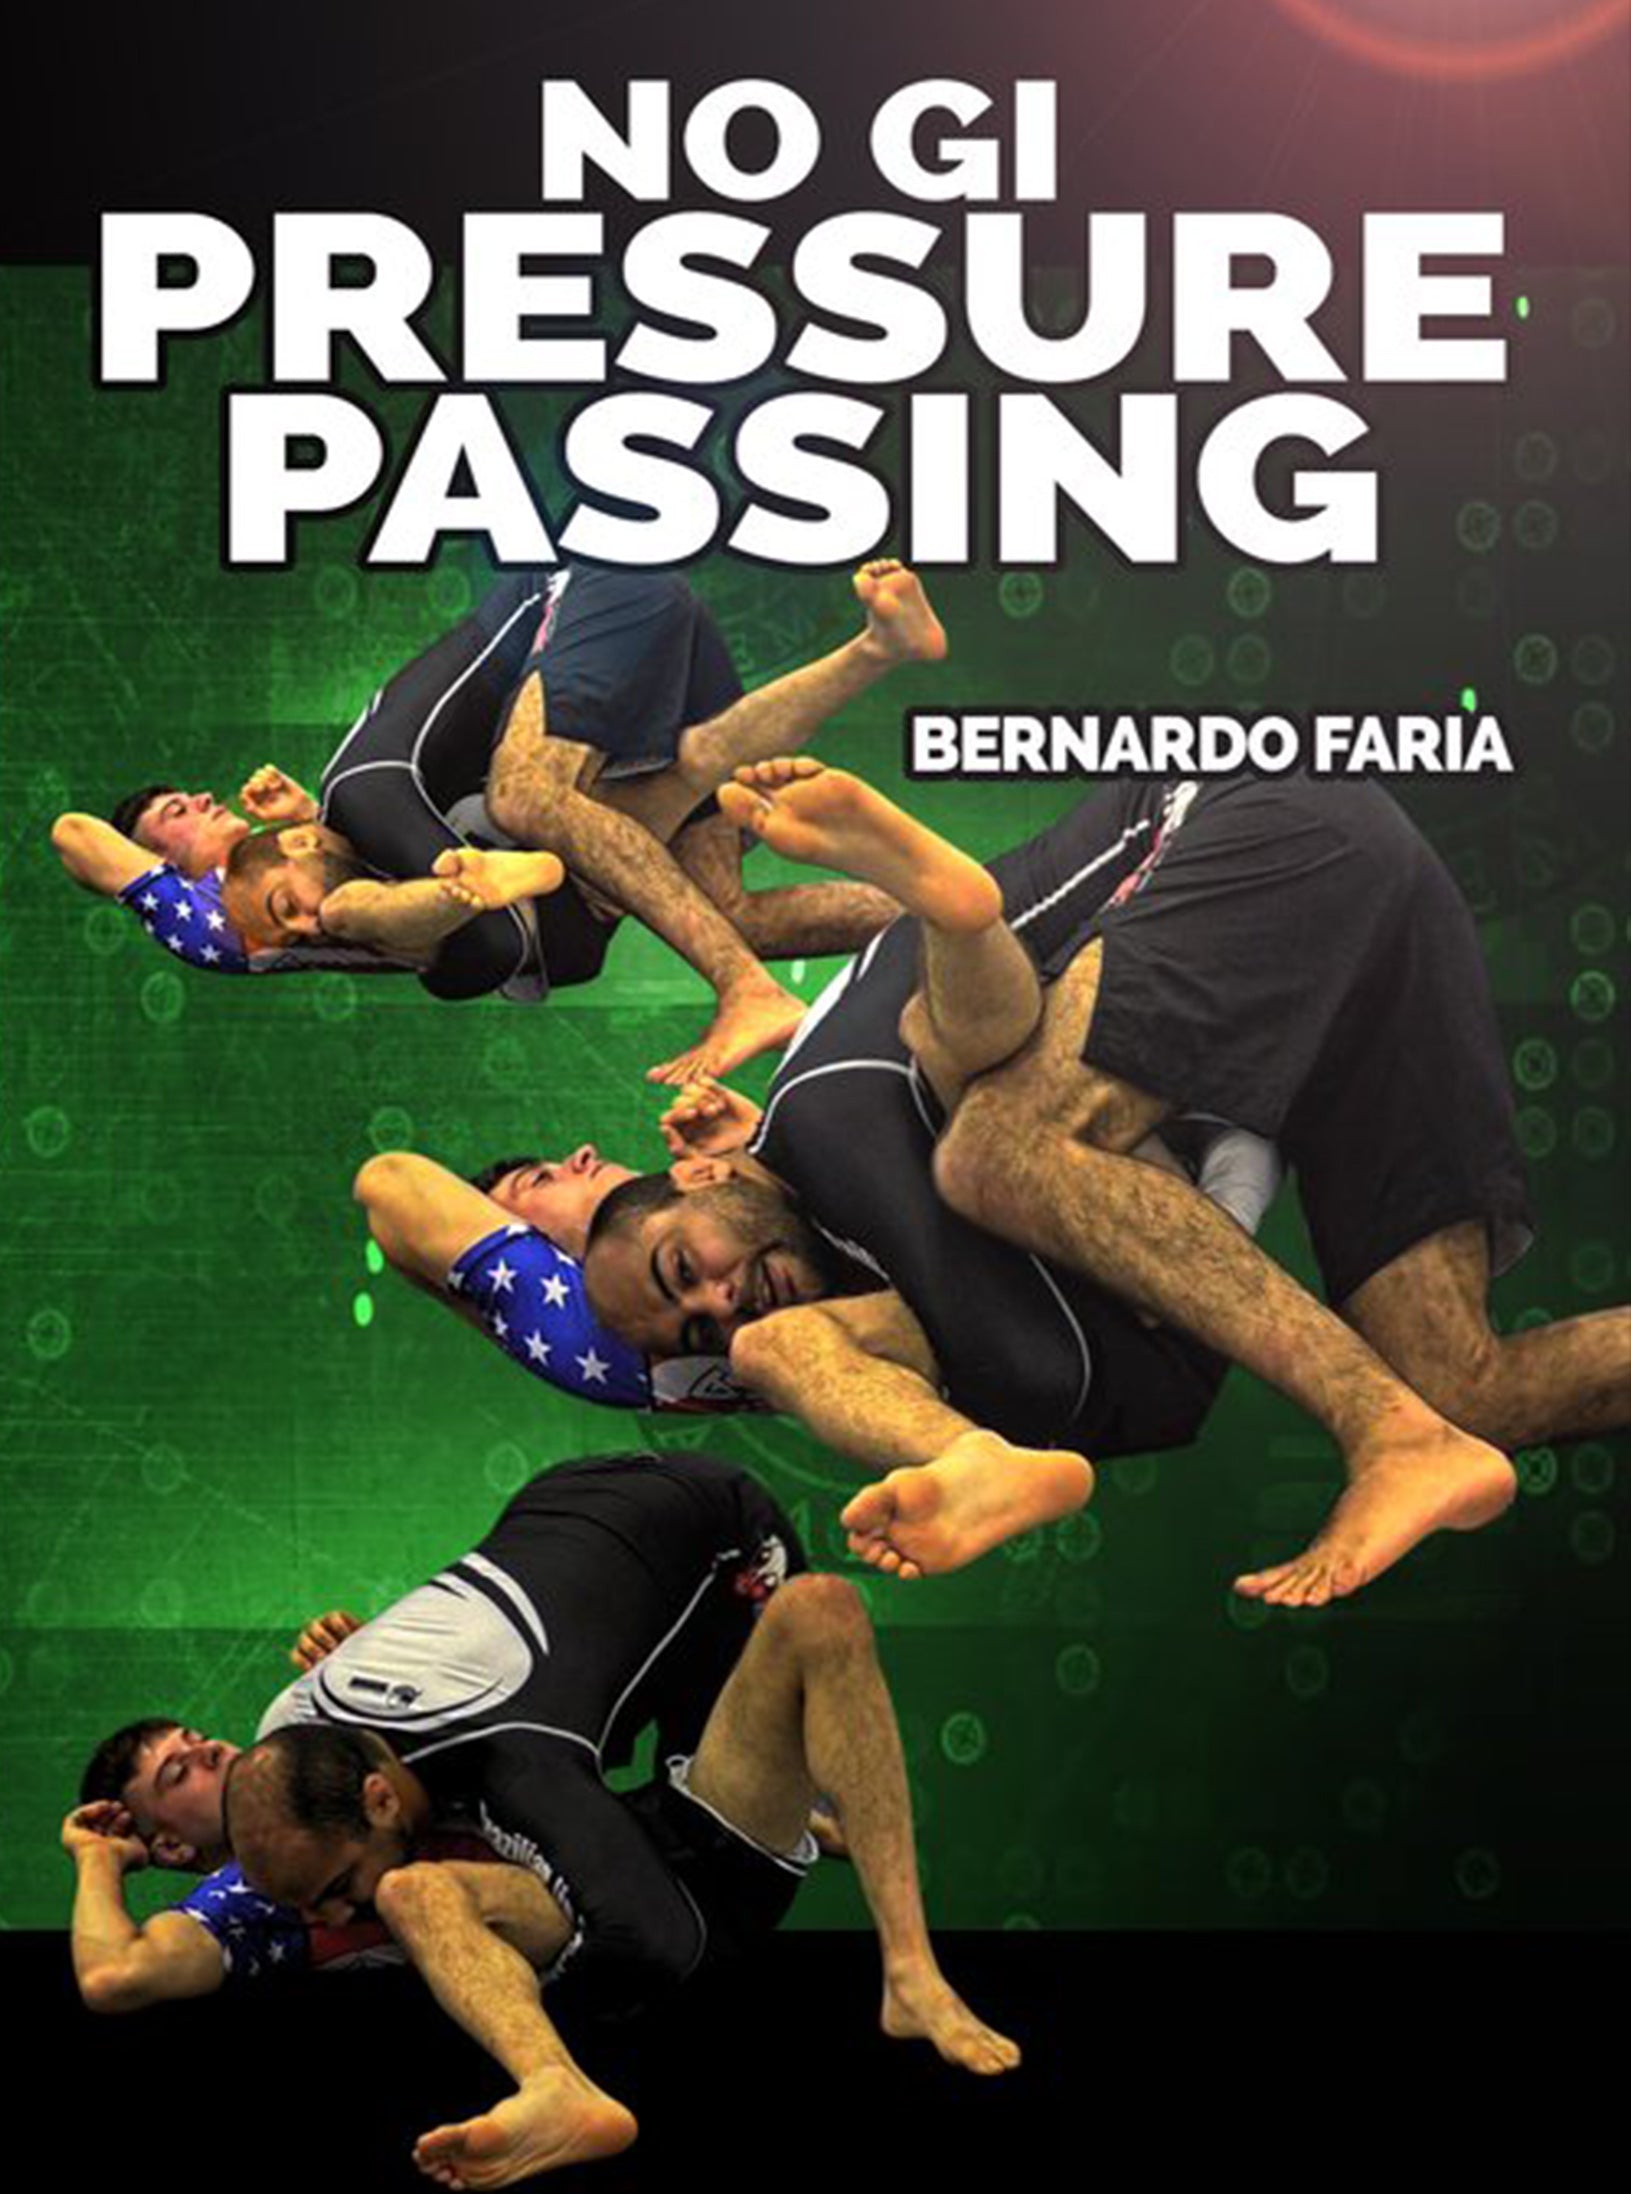 No Gi Pressure Passing by Bernardo Faria